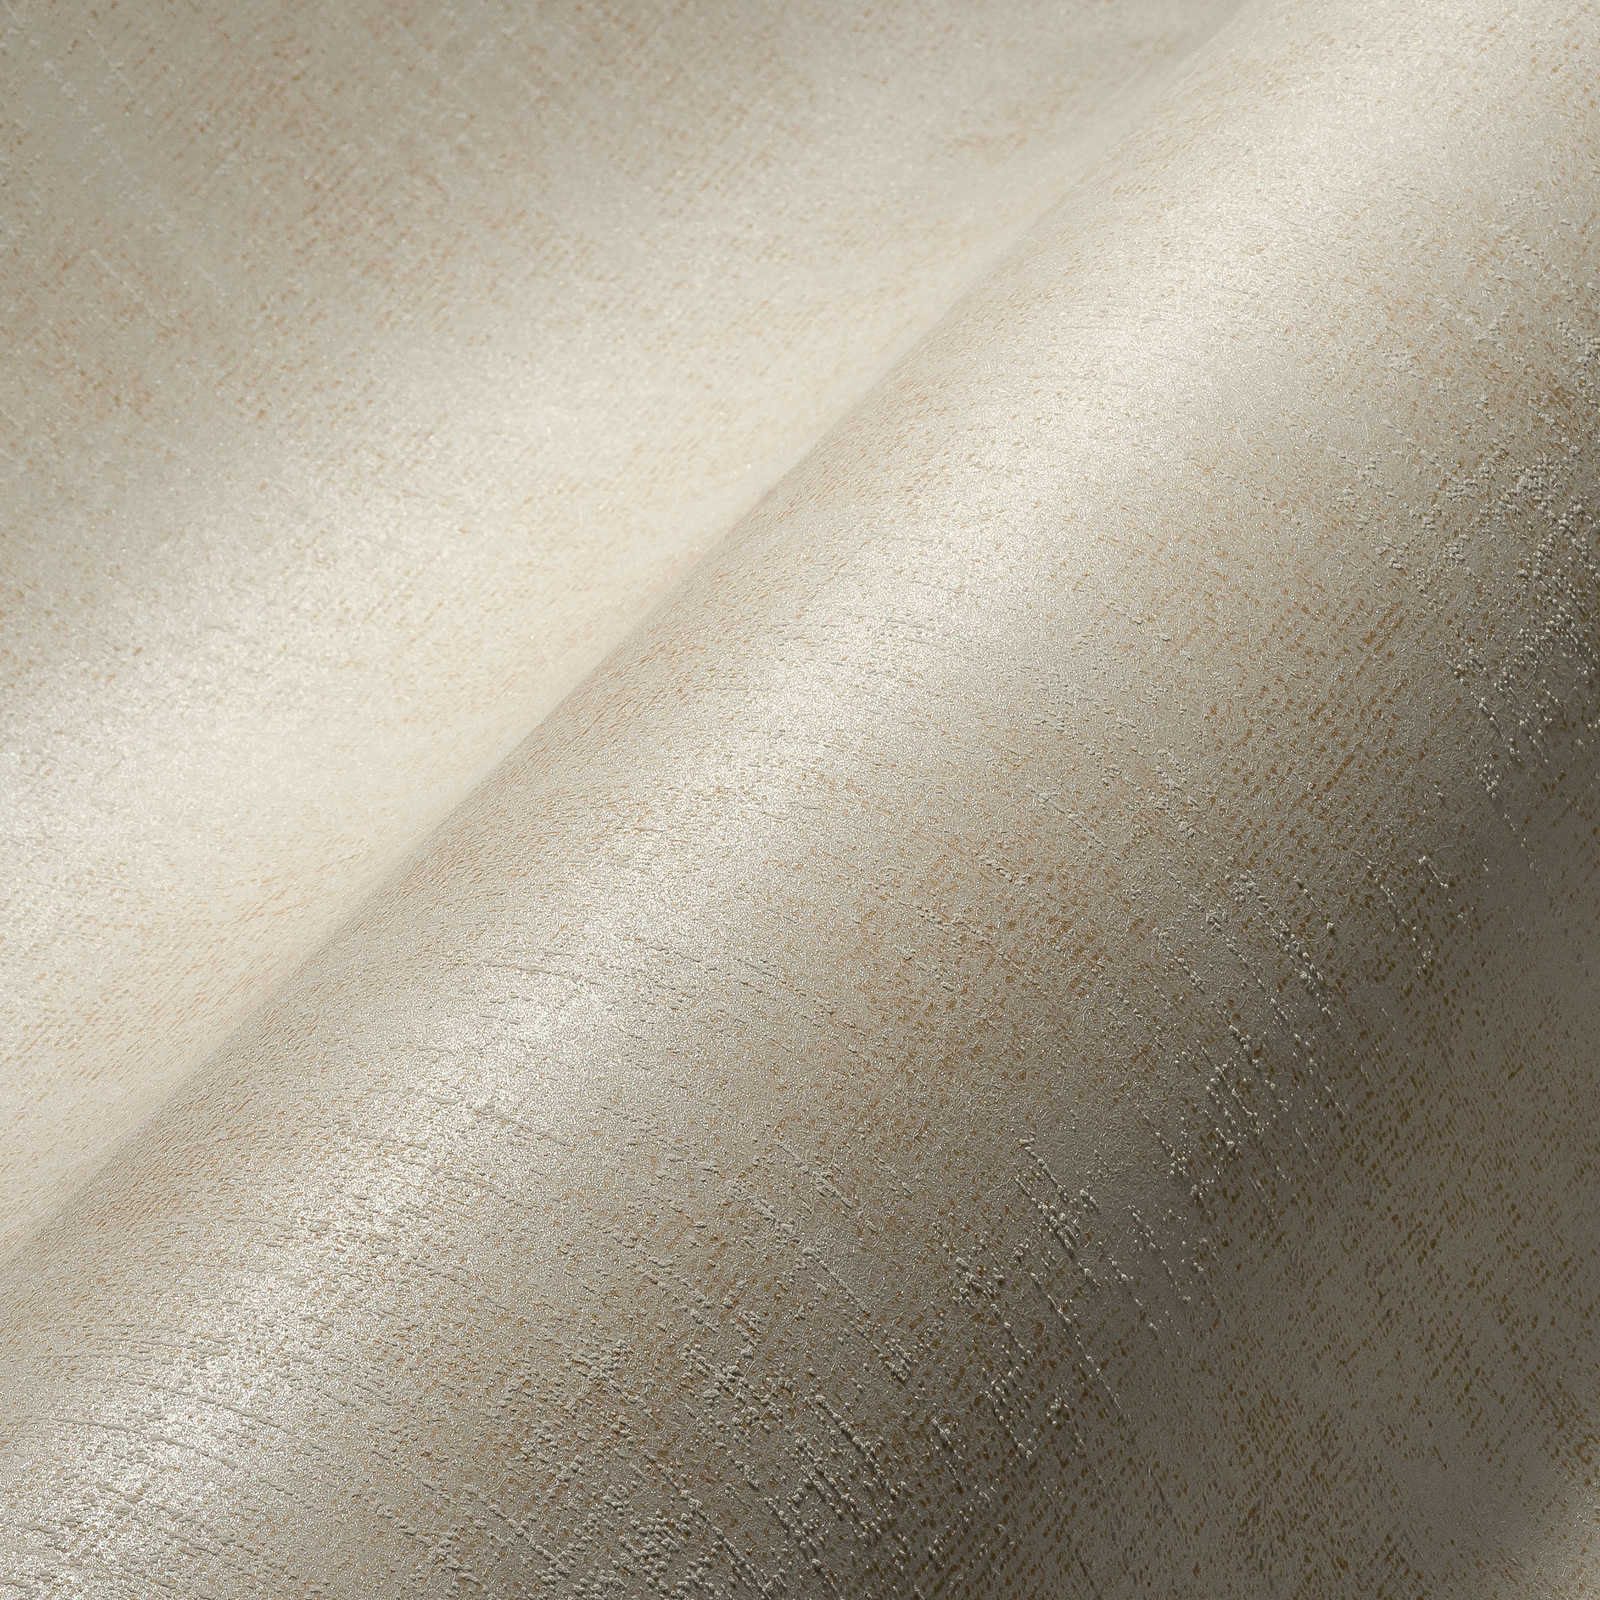             behangcrème wit met textieloptiek & glanseffect - beige
        